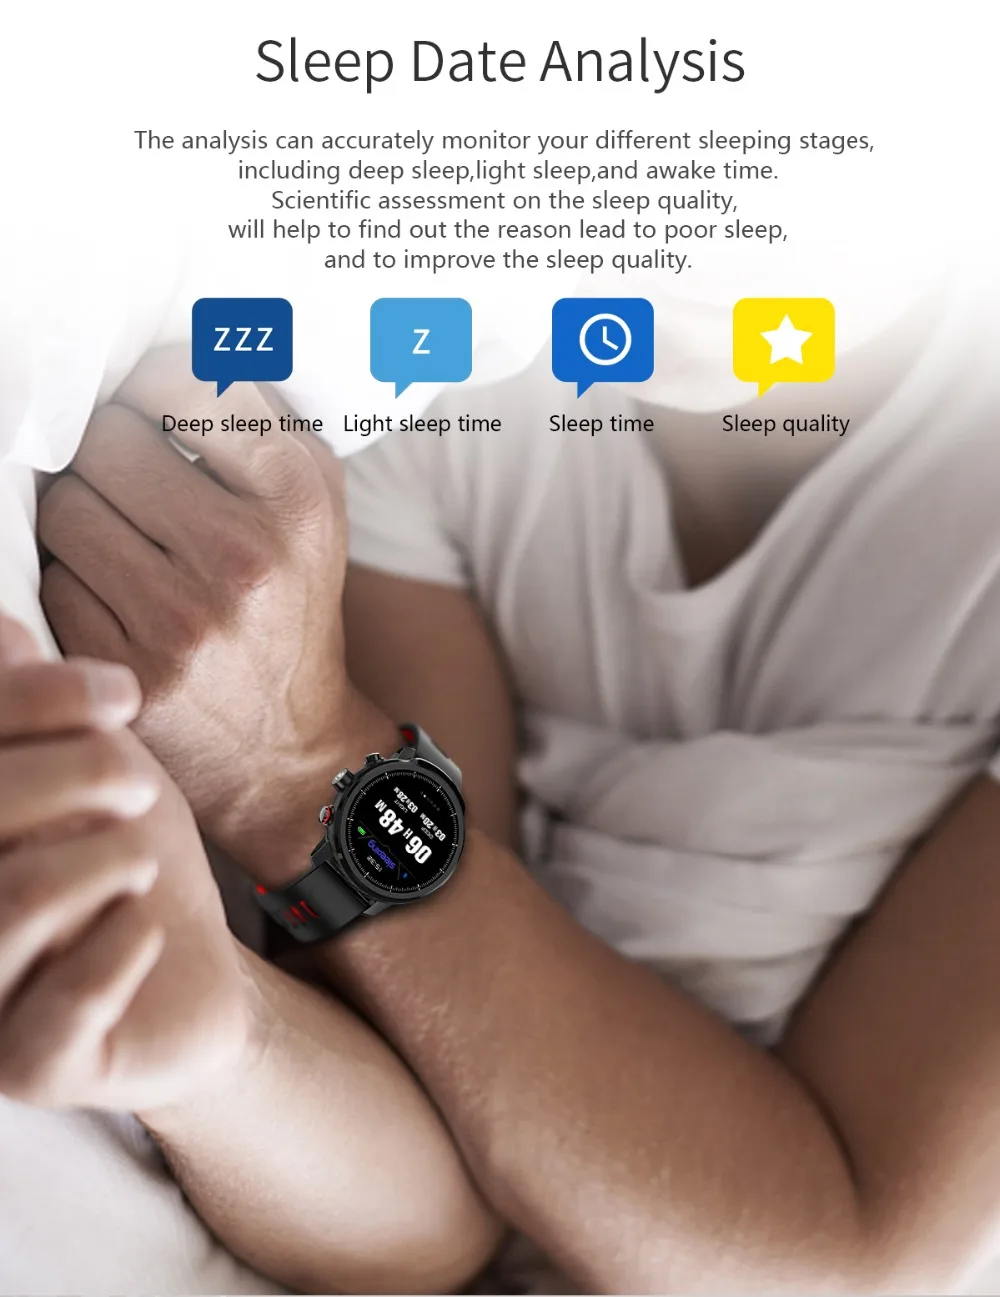 Новые L5 Смарт-часы для мужчин IP68 Водонепроницаемые несколько видов спорта режим сердечного ритма погоды Bluetooth умные часы в режиме ожидания 100 дней